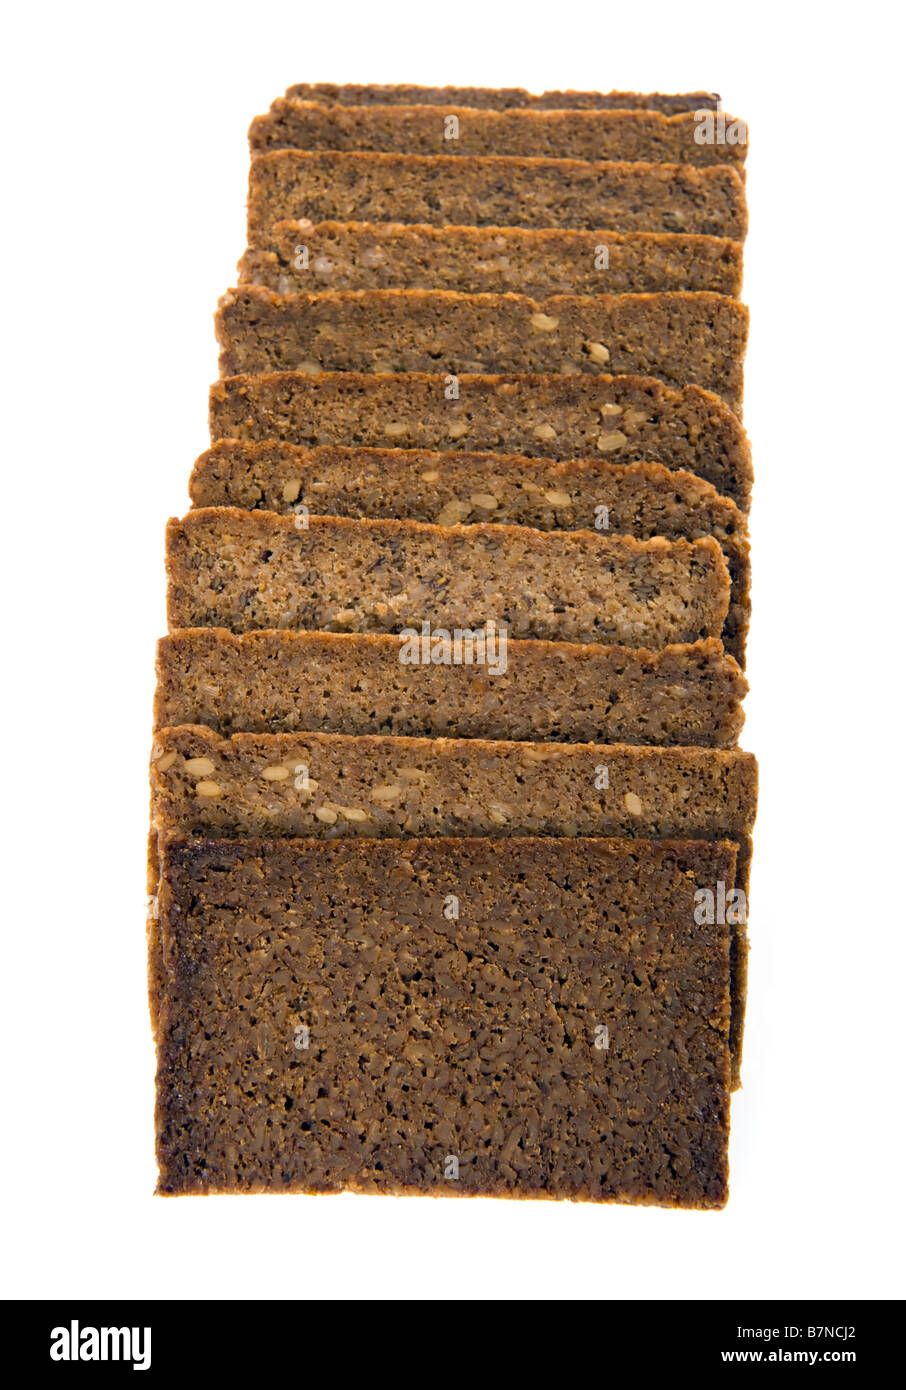 Fette di pane marrone vollkornbrot tedesco tutto il mais pane scuro chicco di mais derrata alimentare pane integrale di grano intero assortime Foto Stock